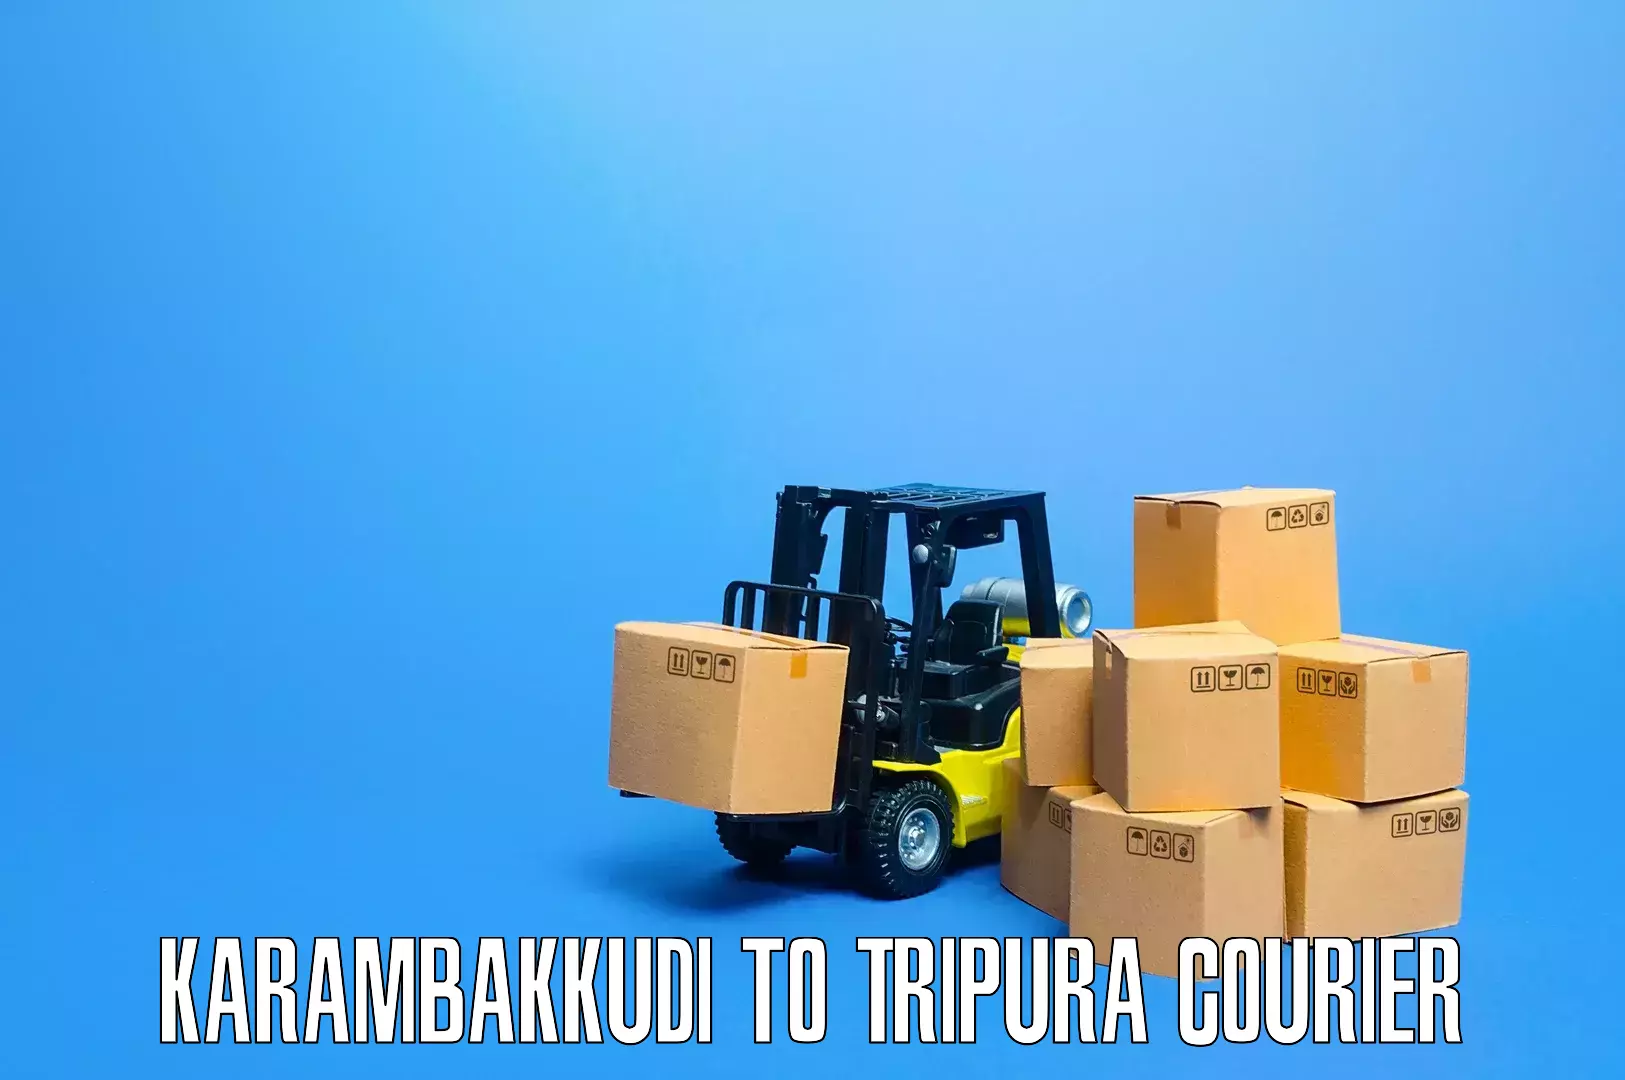 Comprehensive furniture moving in Karambakkudi to Aambasa